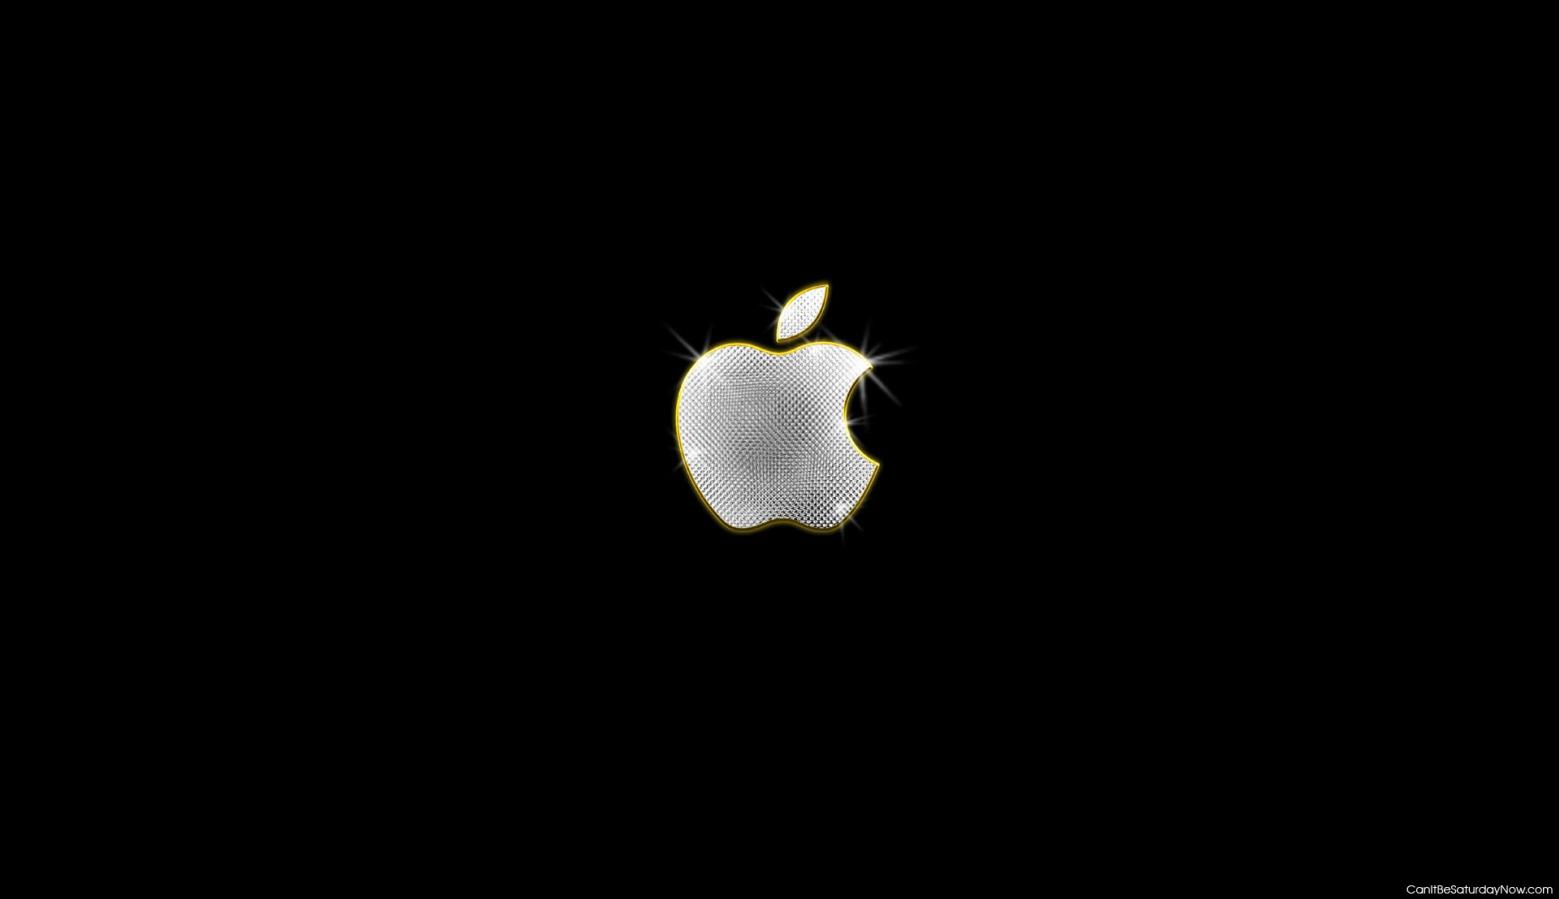 Bling apple - Apple with diamond bling